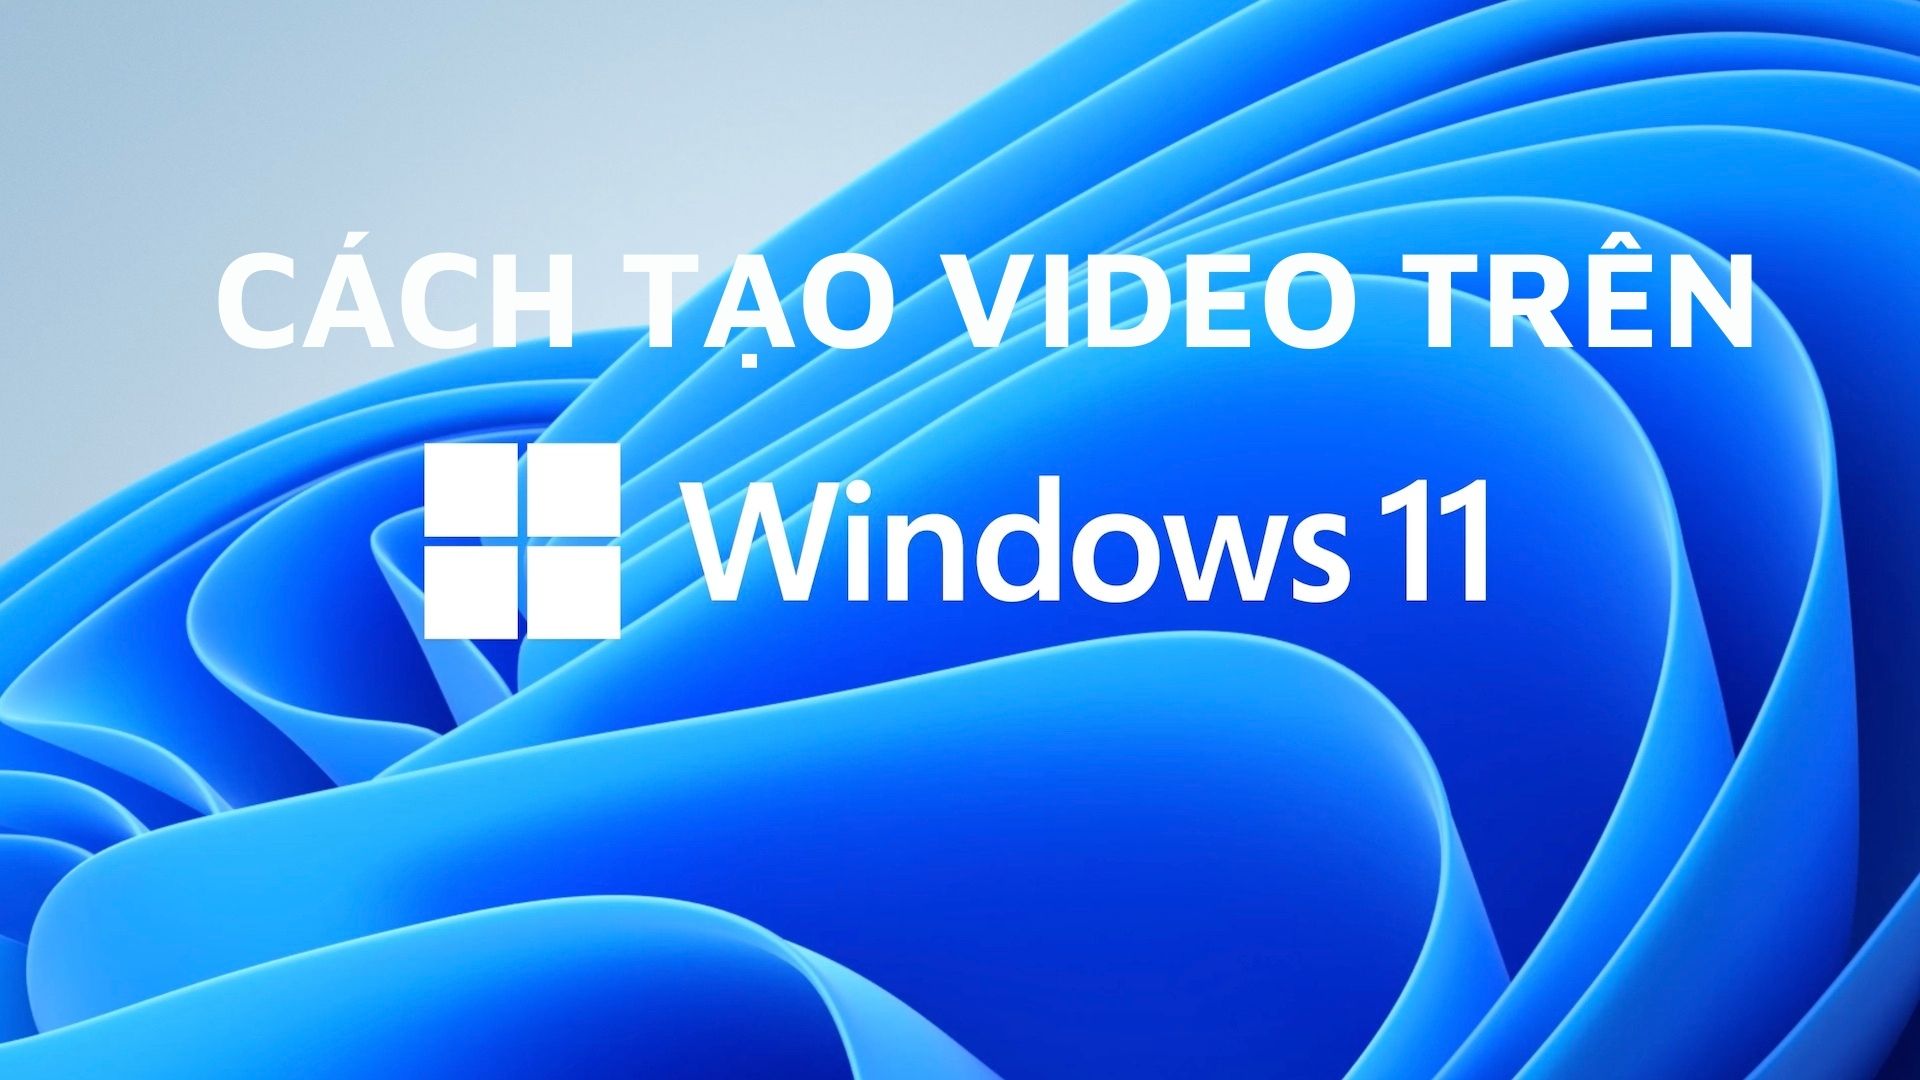 Tạo video trên Windows 11: Với Windows 11, việc tạo video trở nên dễ dàng hơn bao giờ hết. Bạn có thể sử dụng ứng dụng Photos để tạo và chỉnh sửa video của riêng mình. Bất kể là tạo video kỷ niệm cho gia đình hay quảng cáo sản phẩm của mình, Windows 11 sẽ giúp bạn hoàn thiện công việc một cách nhanh chóng và chuyên nghiệp.